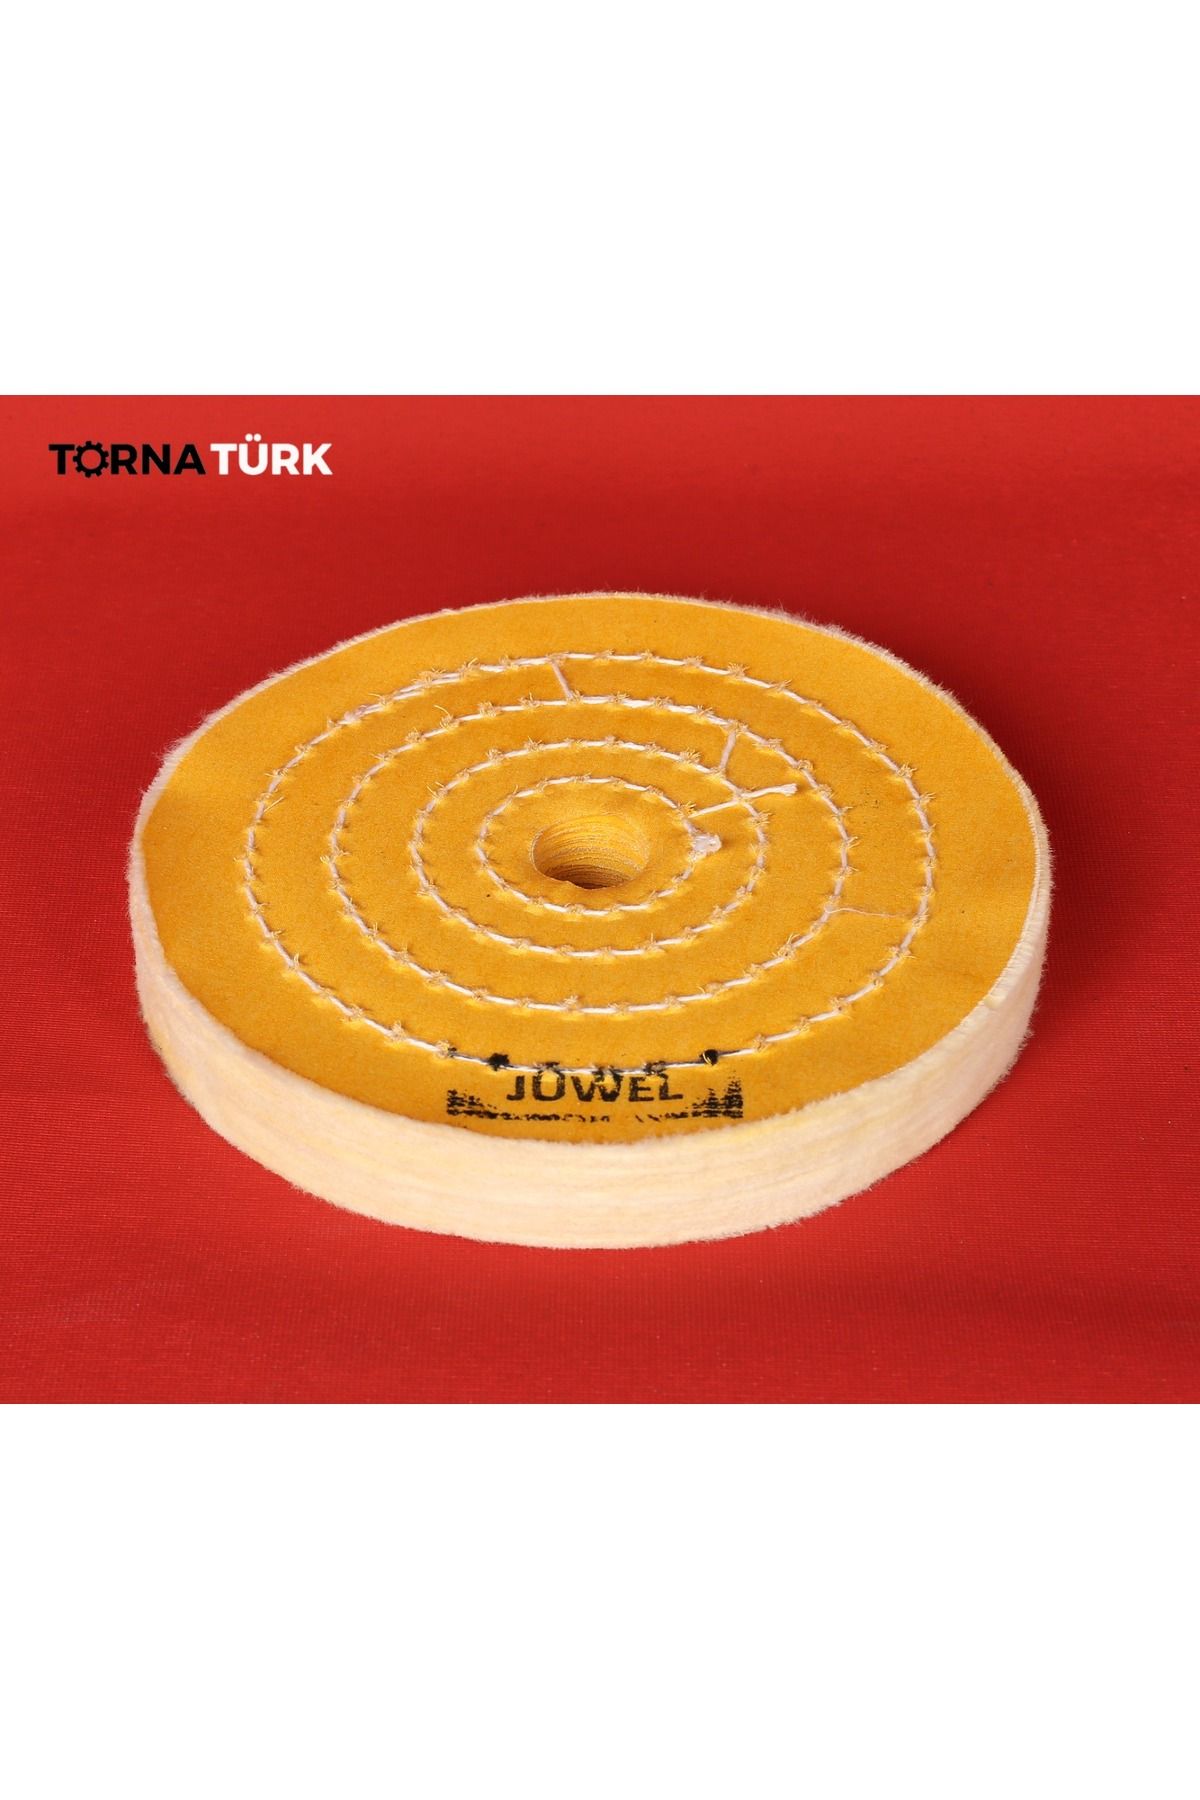 Torna Türk 6 x 70 x delik 20 - 22 mm delik sert sarı polisaj keçesi ( 150 mm ) extra shine - Tornatürk